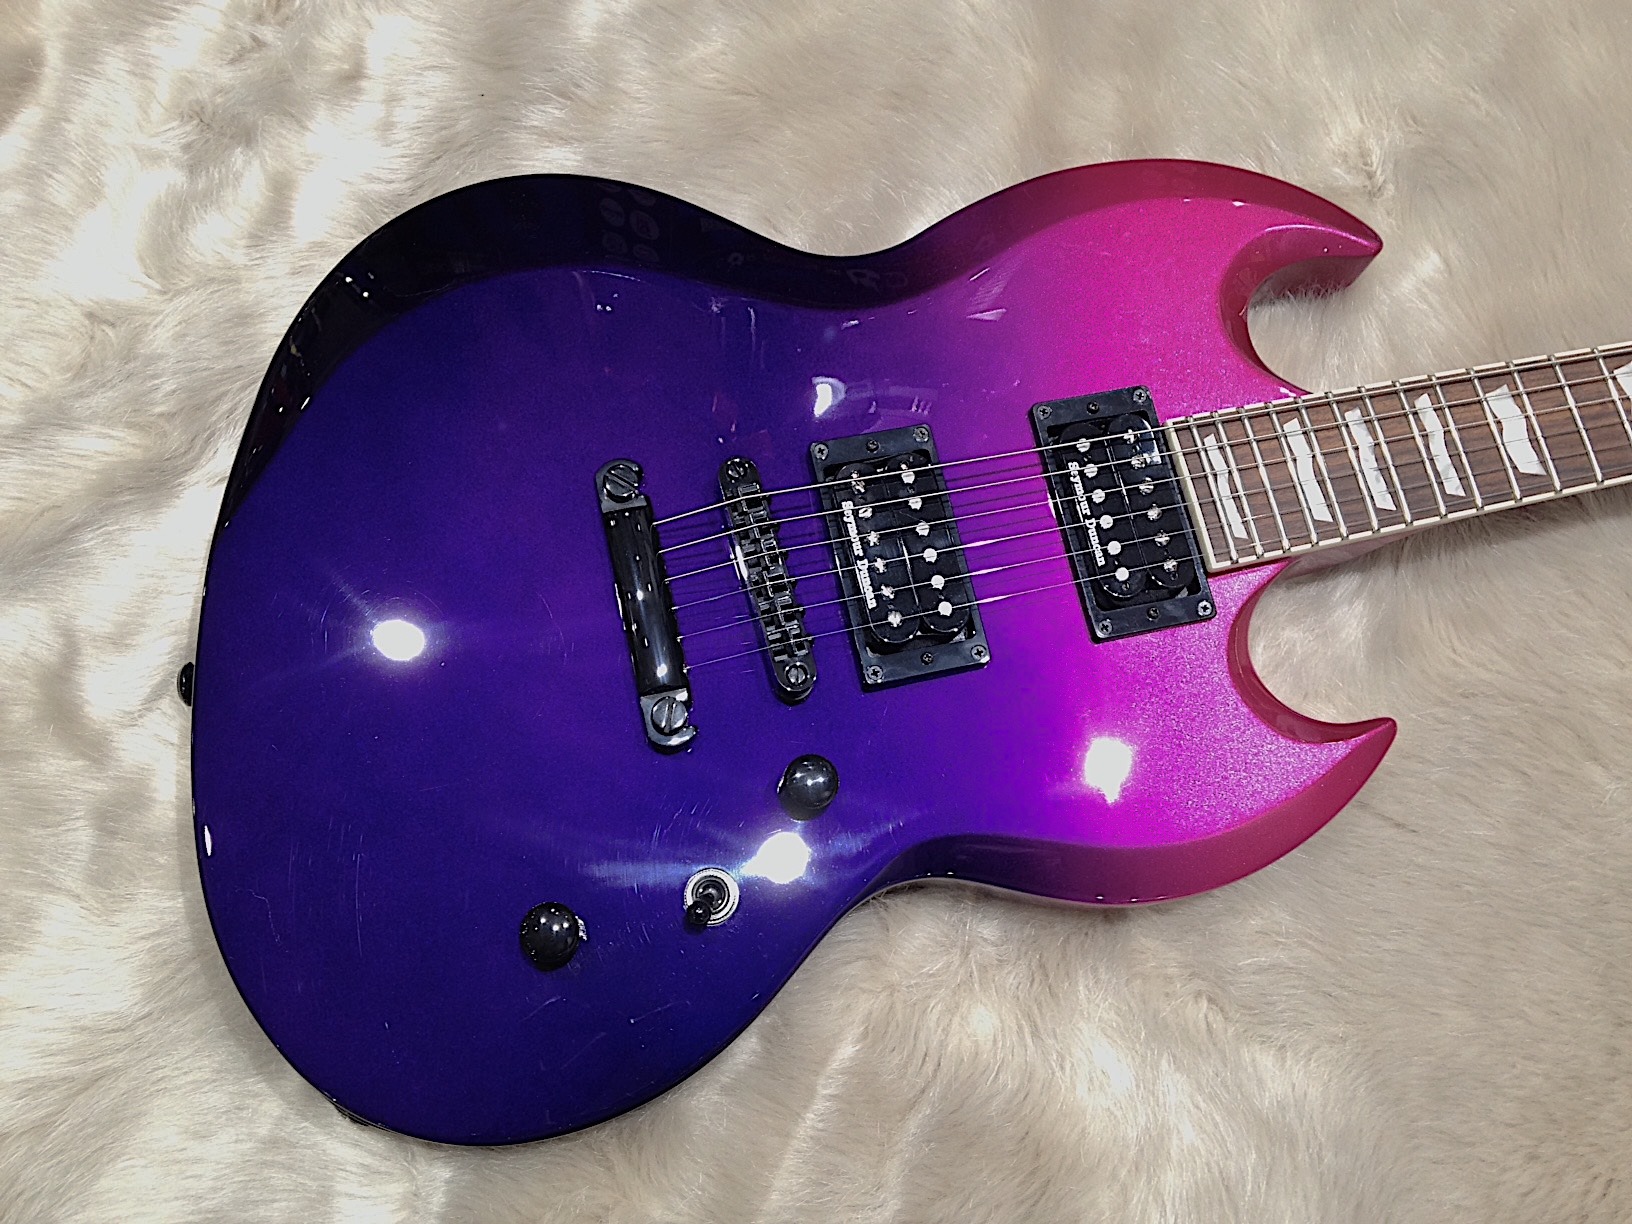 Ltd-viper-400-guitar